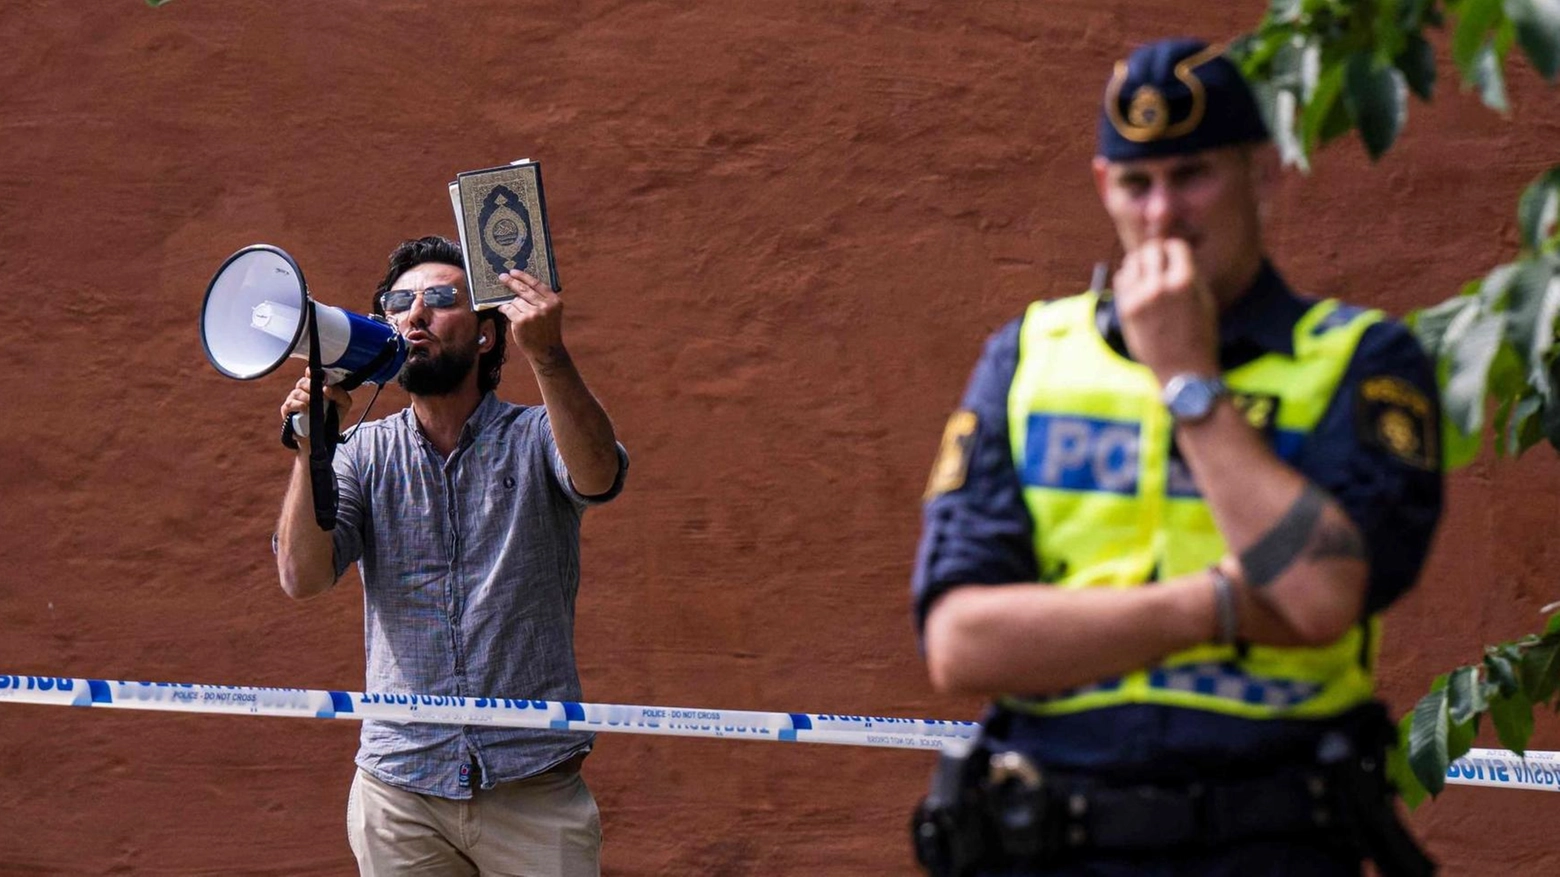 Profugo iracheno dà fuoco al libro sacro davanti alla moschea di Stoccolma "La legge islamica è anti-democratica". In passato la manifestazione fu vietata.